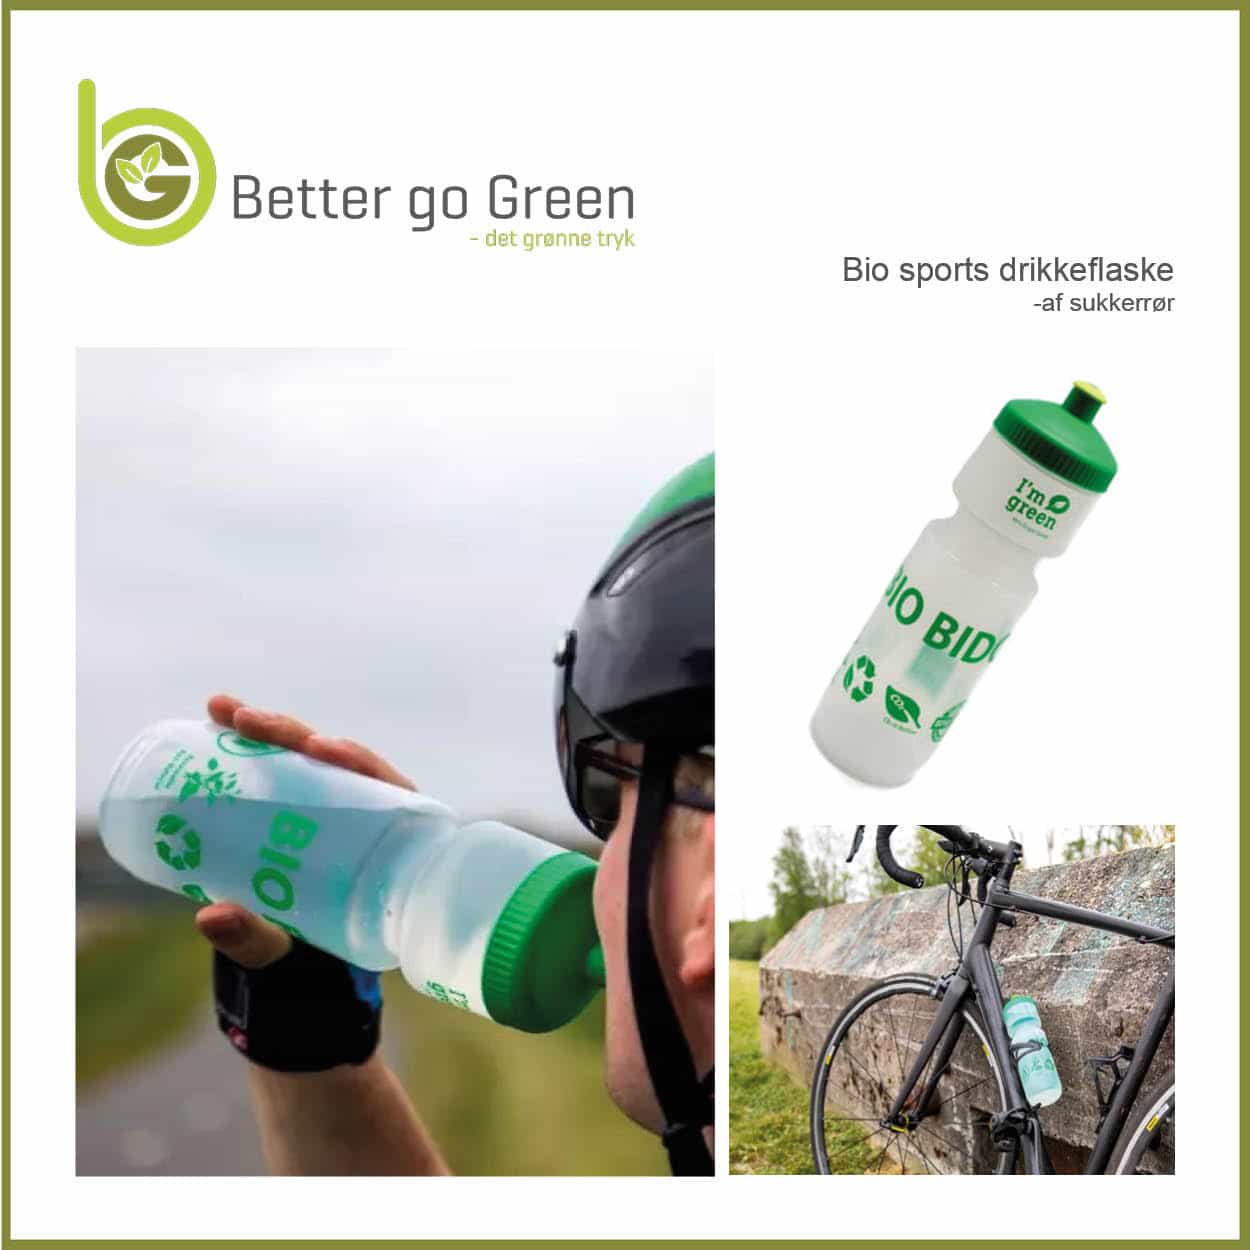 Bio sports drikkeflaske af sukkerrør. BetterGoGreen.dk